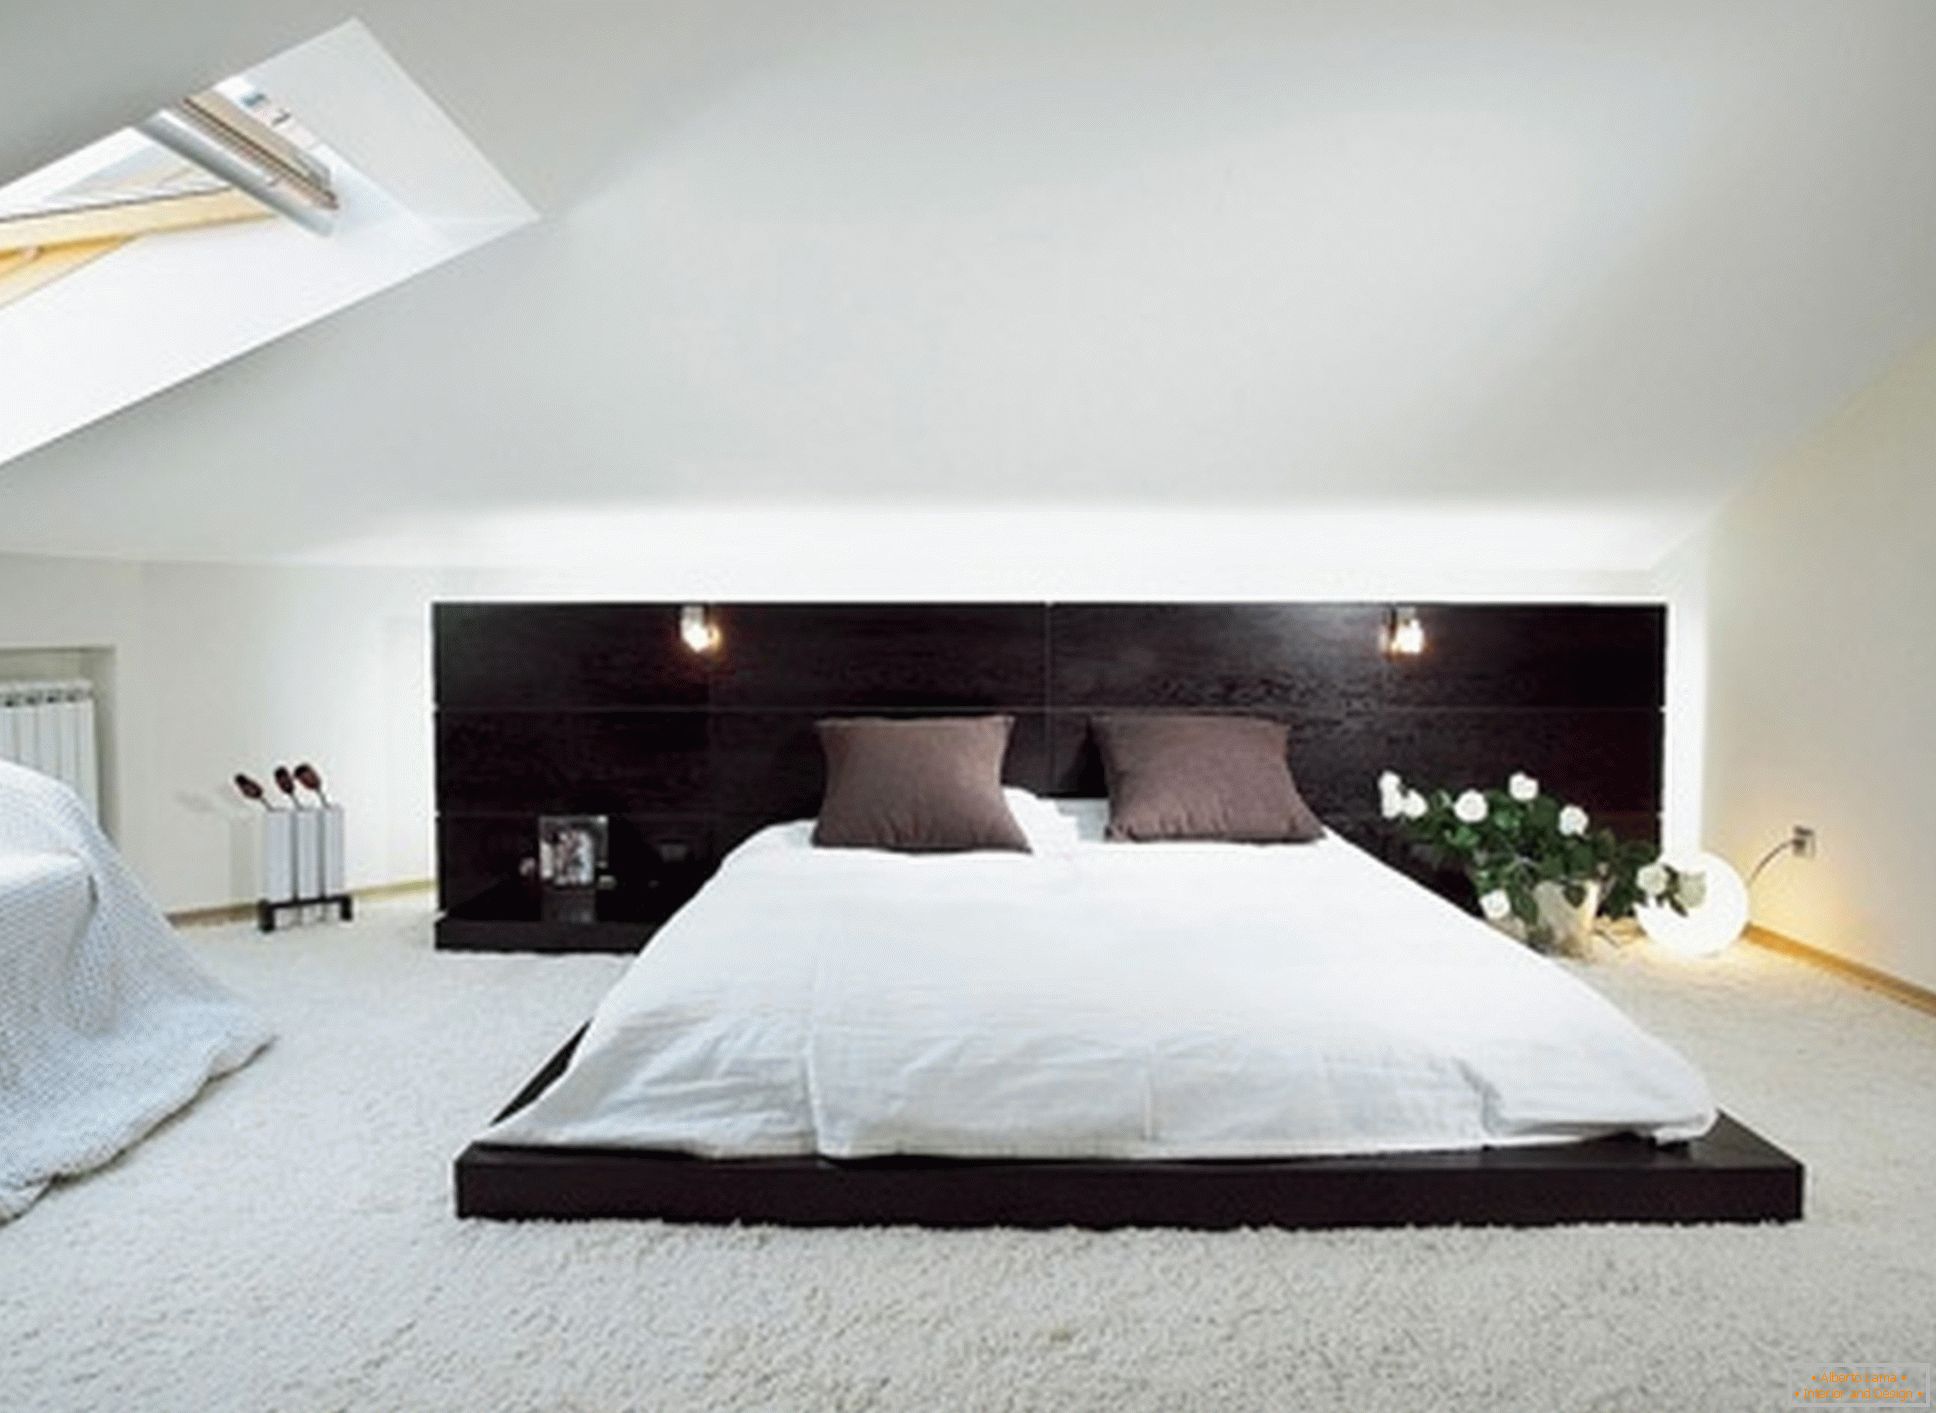 Quarto luxuoso no estilo do minimalismo - um exemplo de design bem-sucedido de uma pequena sala no sótão.